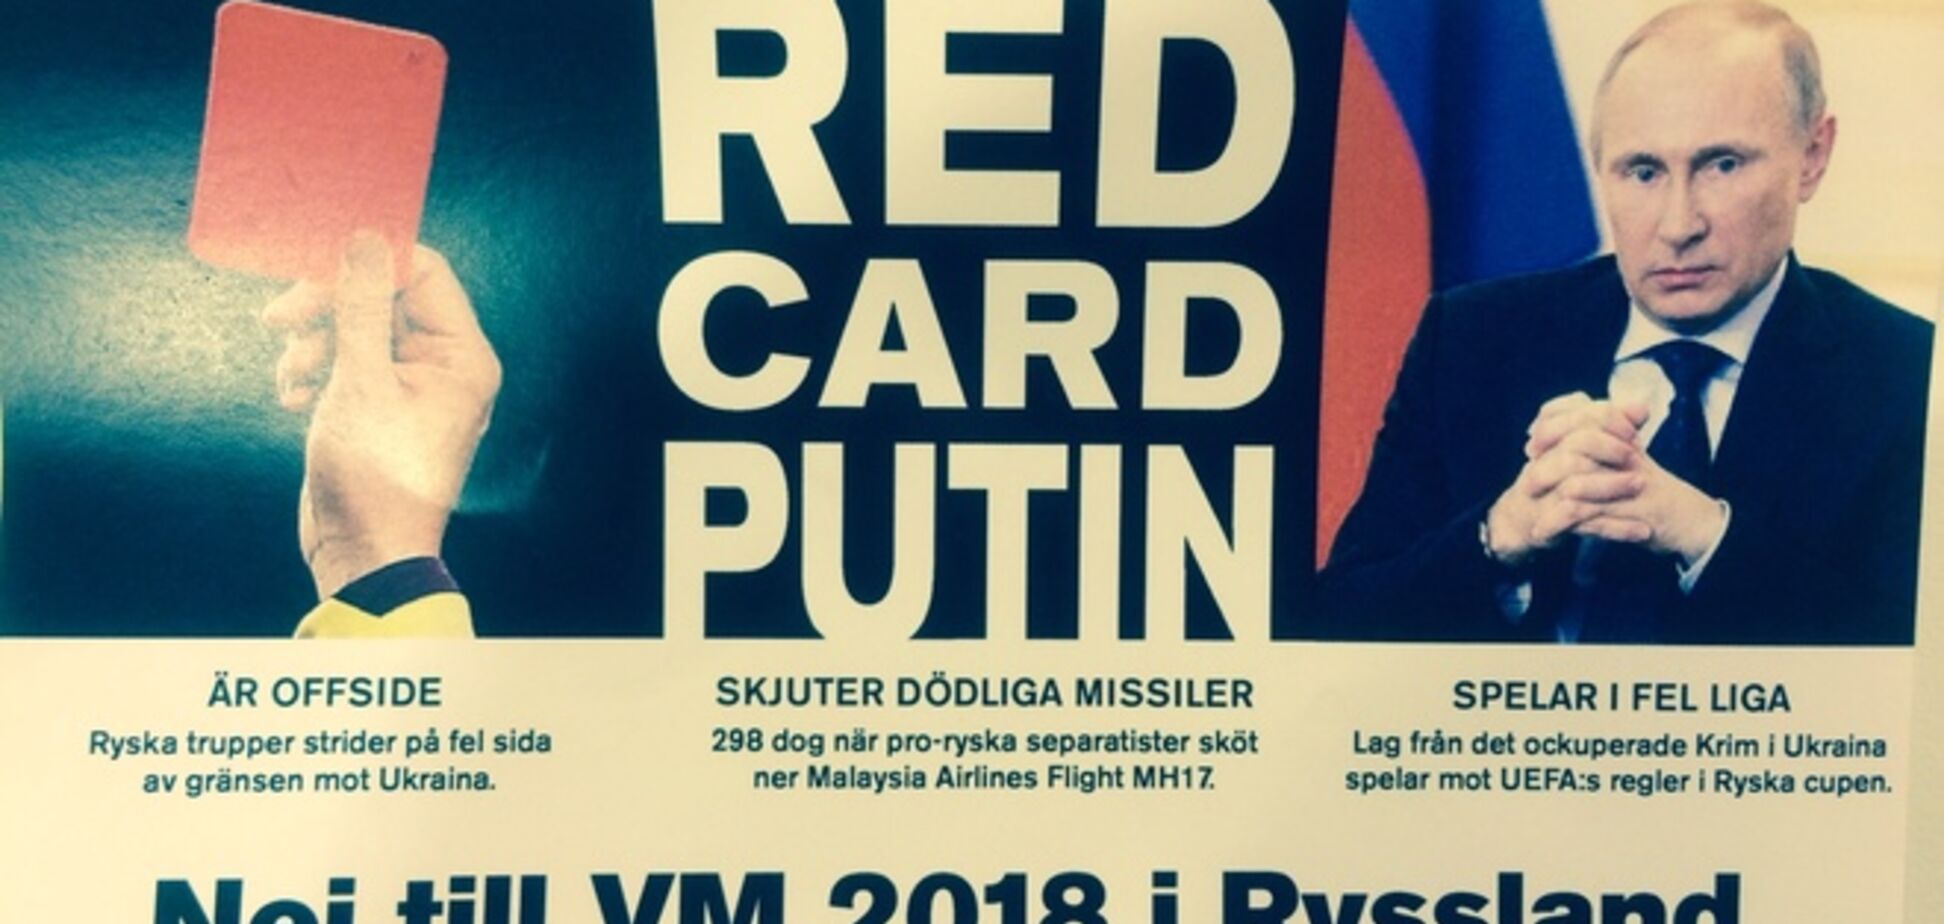 Шведы показали Путину 'красную карточку' перед футбольным матчем с Россией